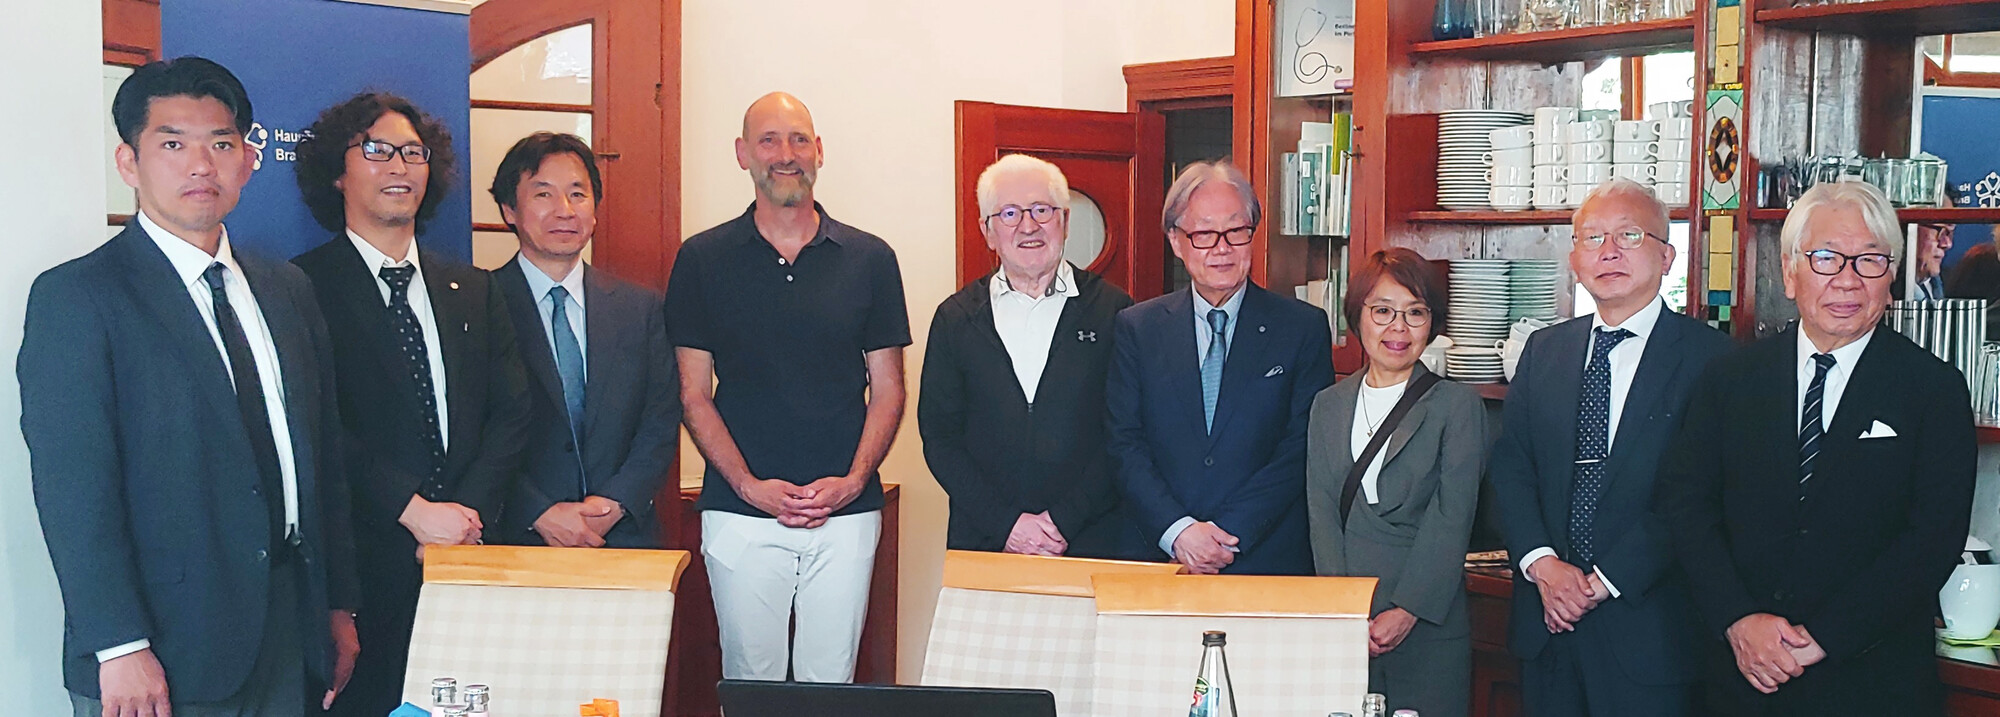 Eine japanische Delegation von Gesundheitsfachleuten hat dem Hausärzteverband Berlin und Brandenburg bereits zum dritten Mal einen Besuch abgestattet. Die Leistung der Hausärztinnen und Hausärzte in Deutschland während der Corona-Pandemie fand bei den Besuchern große Anerkennung.